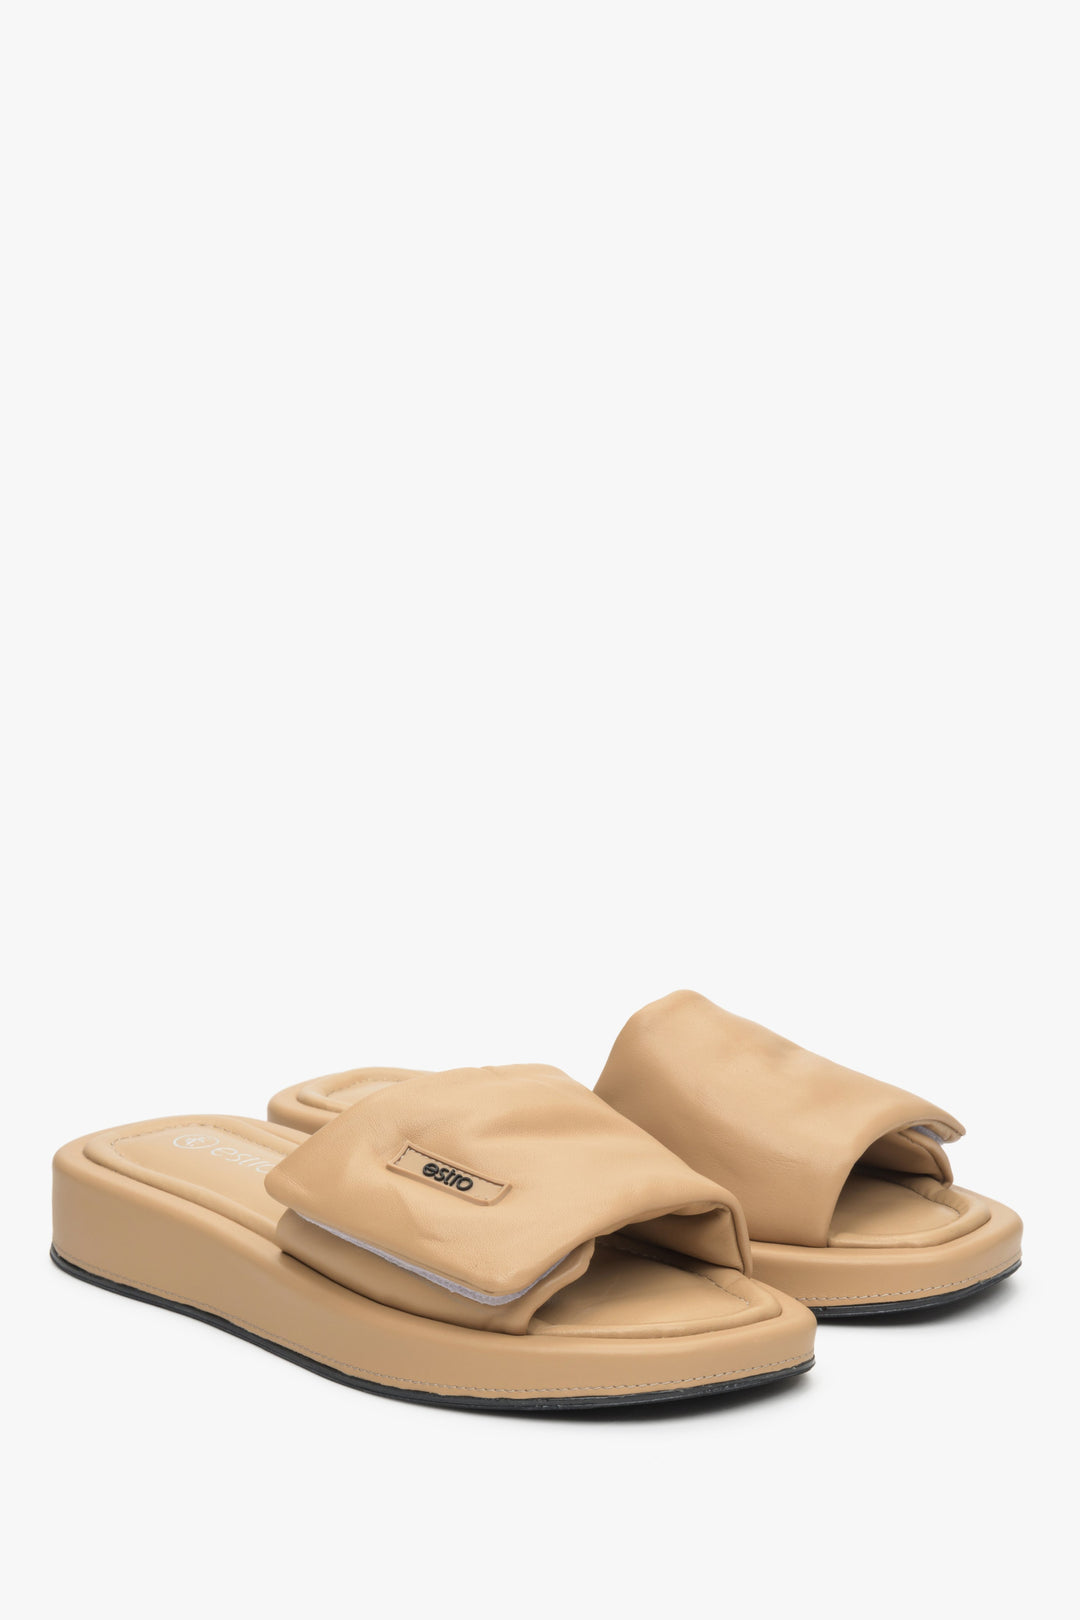 Women's leather slide sandals by Estro in beige.